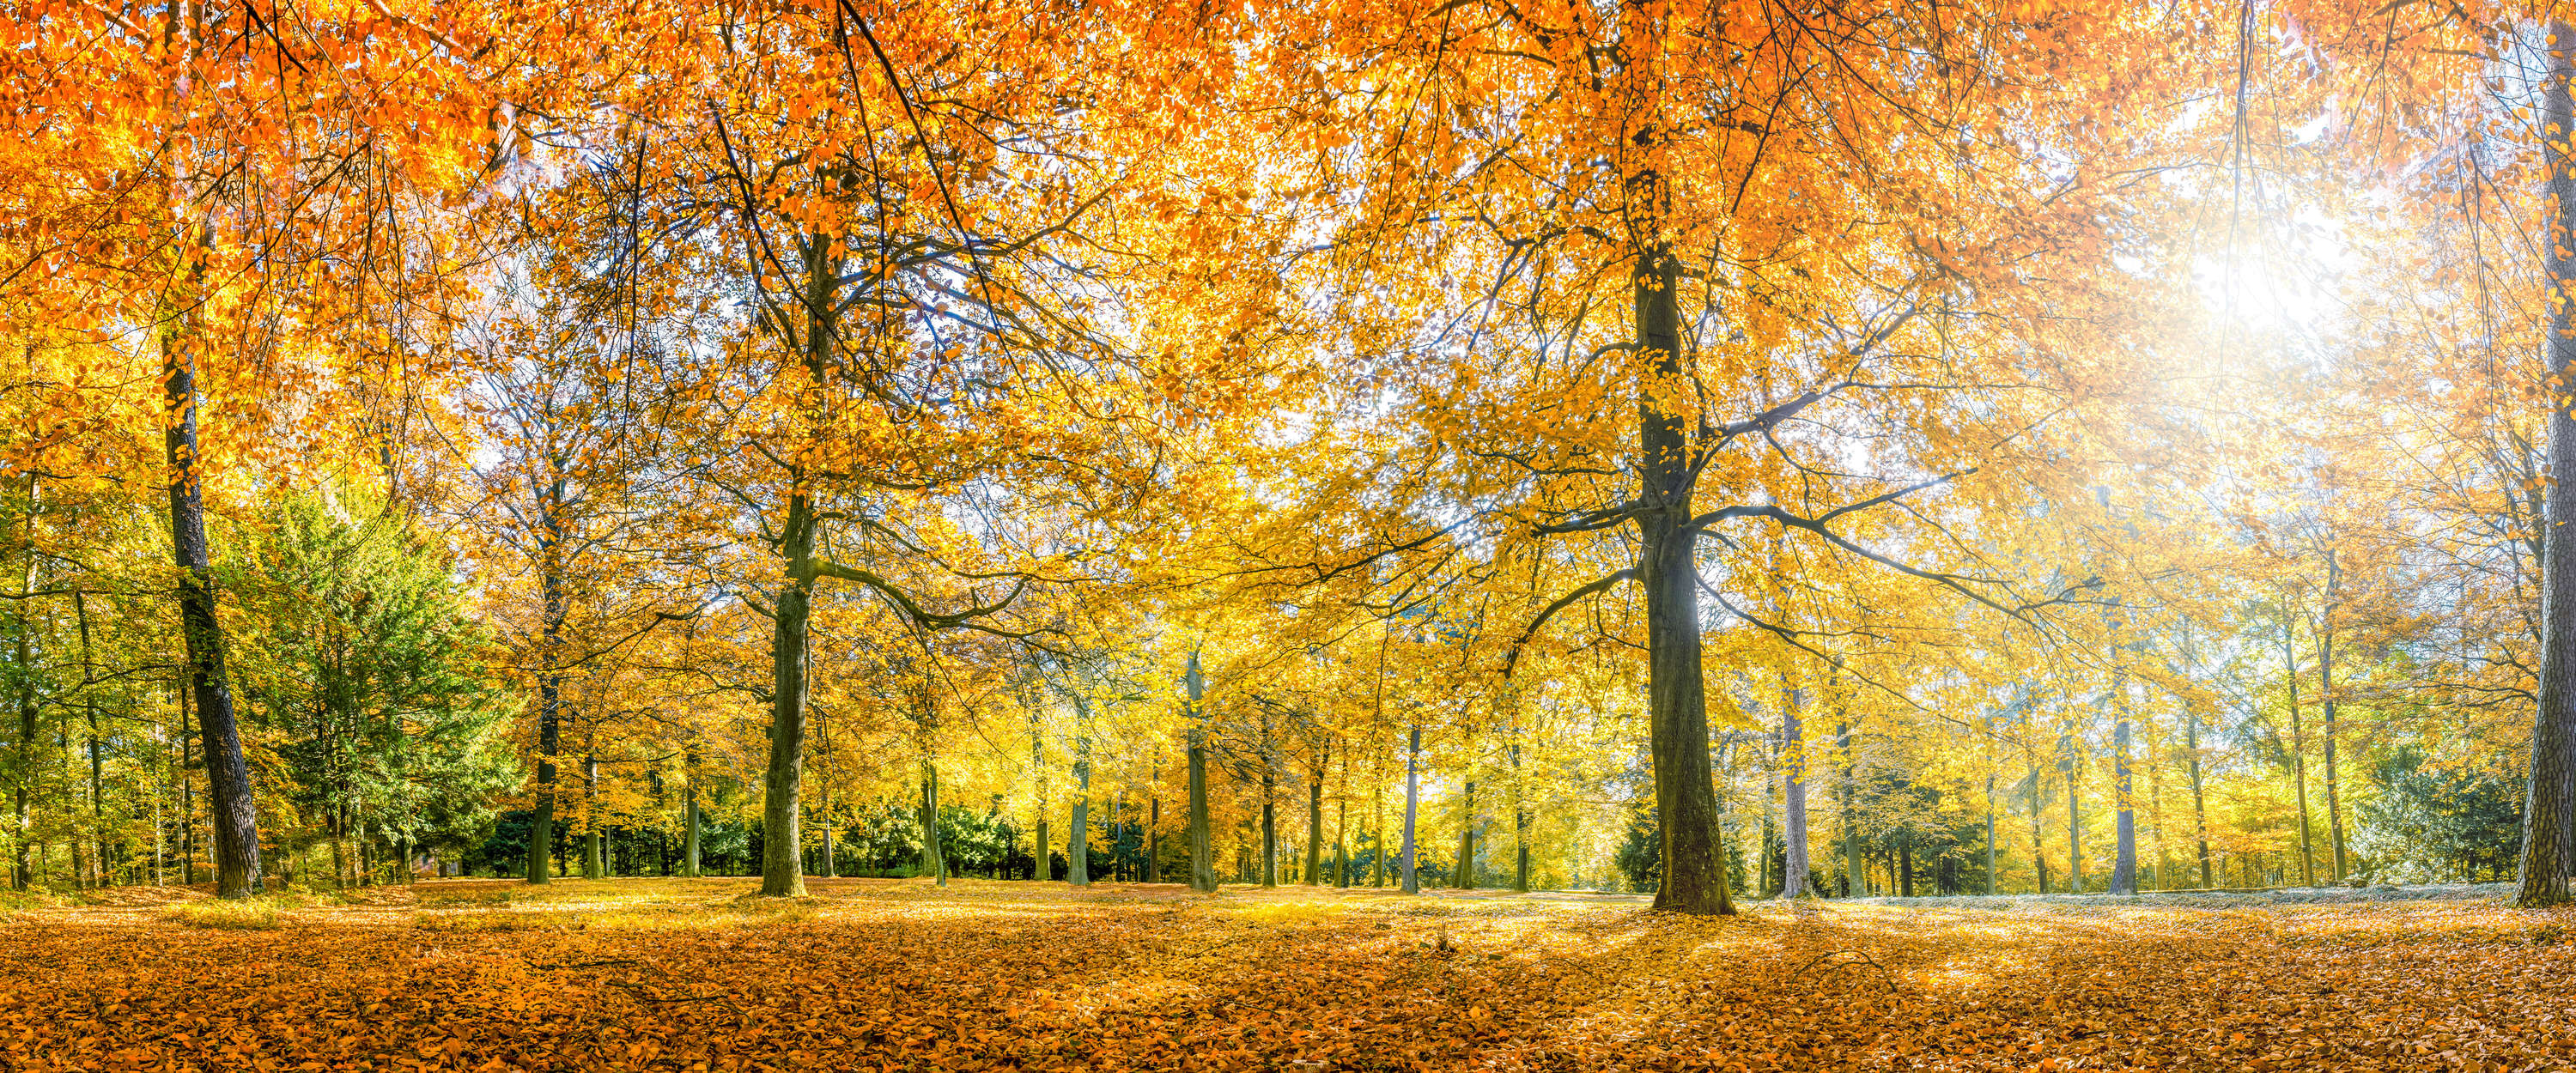             Papier peint forêt en automne avec des arbres à feuilles jaunes
        